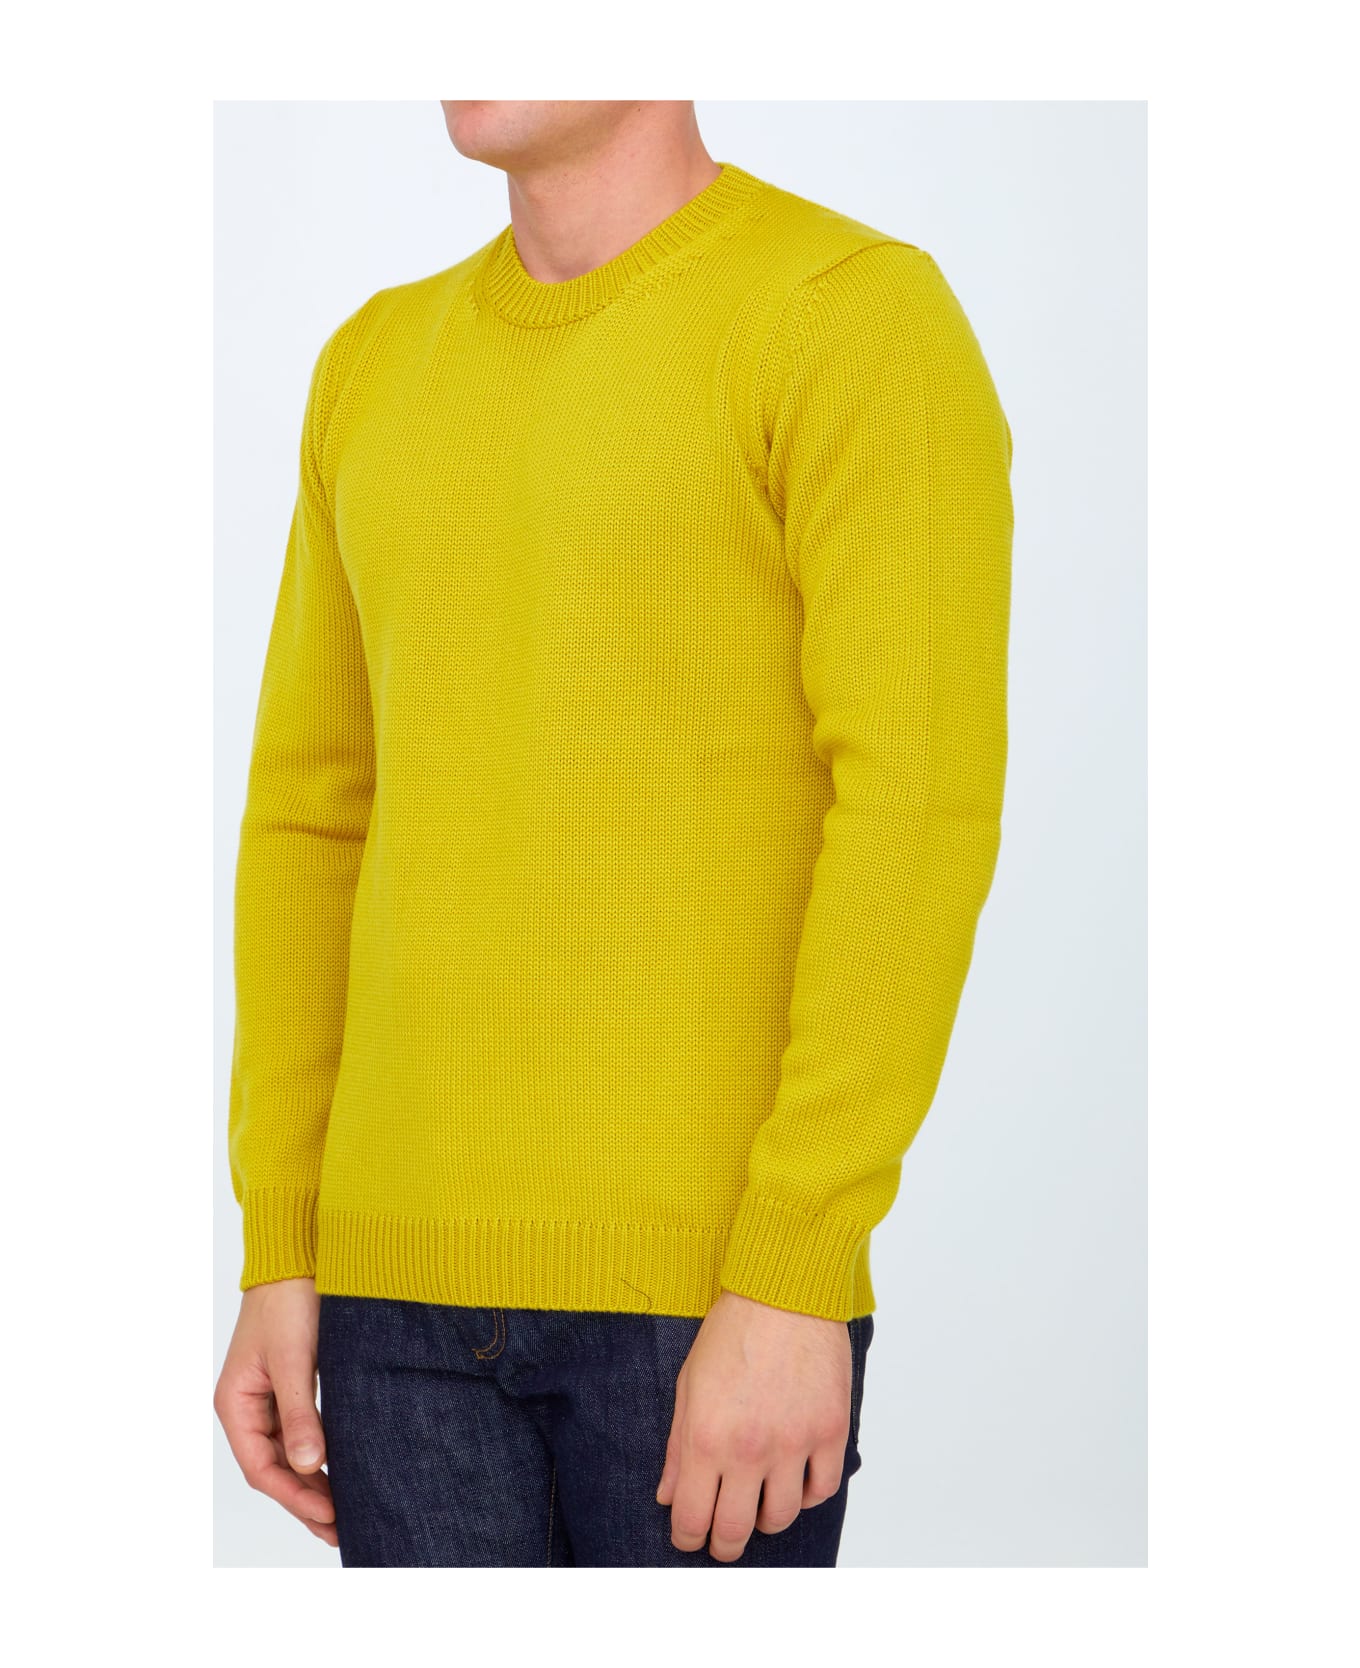 Roberto Collina Yellow Merino Wool Sweater - YELLOW